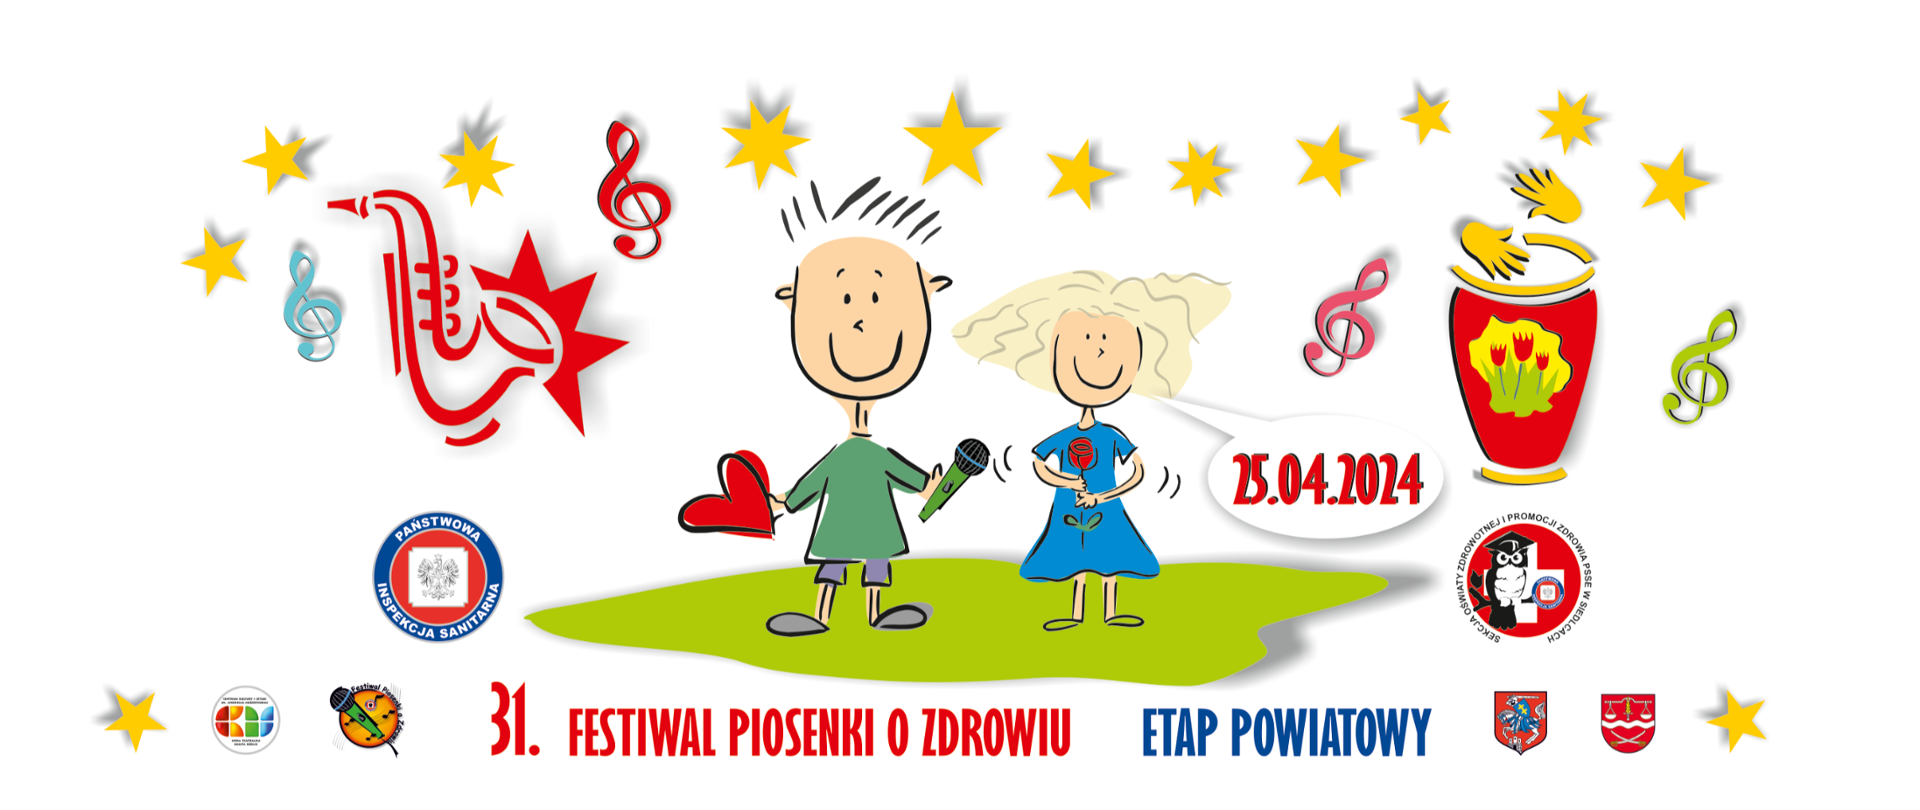 Rysunek z dziećmi na trawie, wokół gwiazdki i klucze wiolinowe i napis 31. Festiwal Piosenki o Zdrowiu 